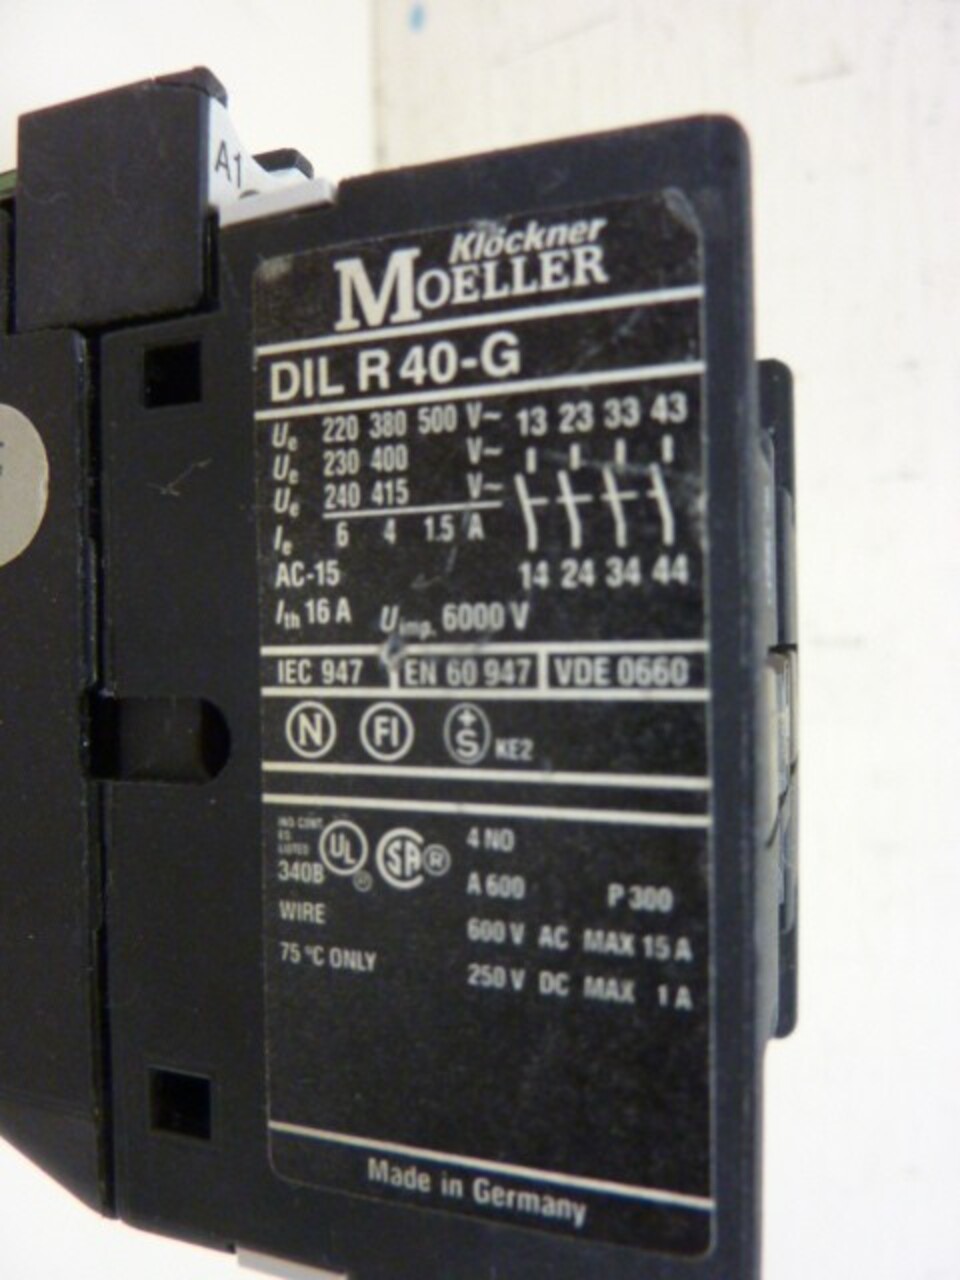 KLOCKNER MOELLER DIL R 22 15 A 600 V CONTACTOR 